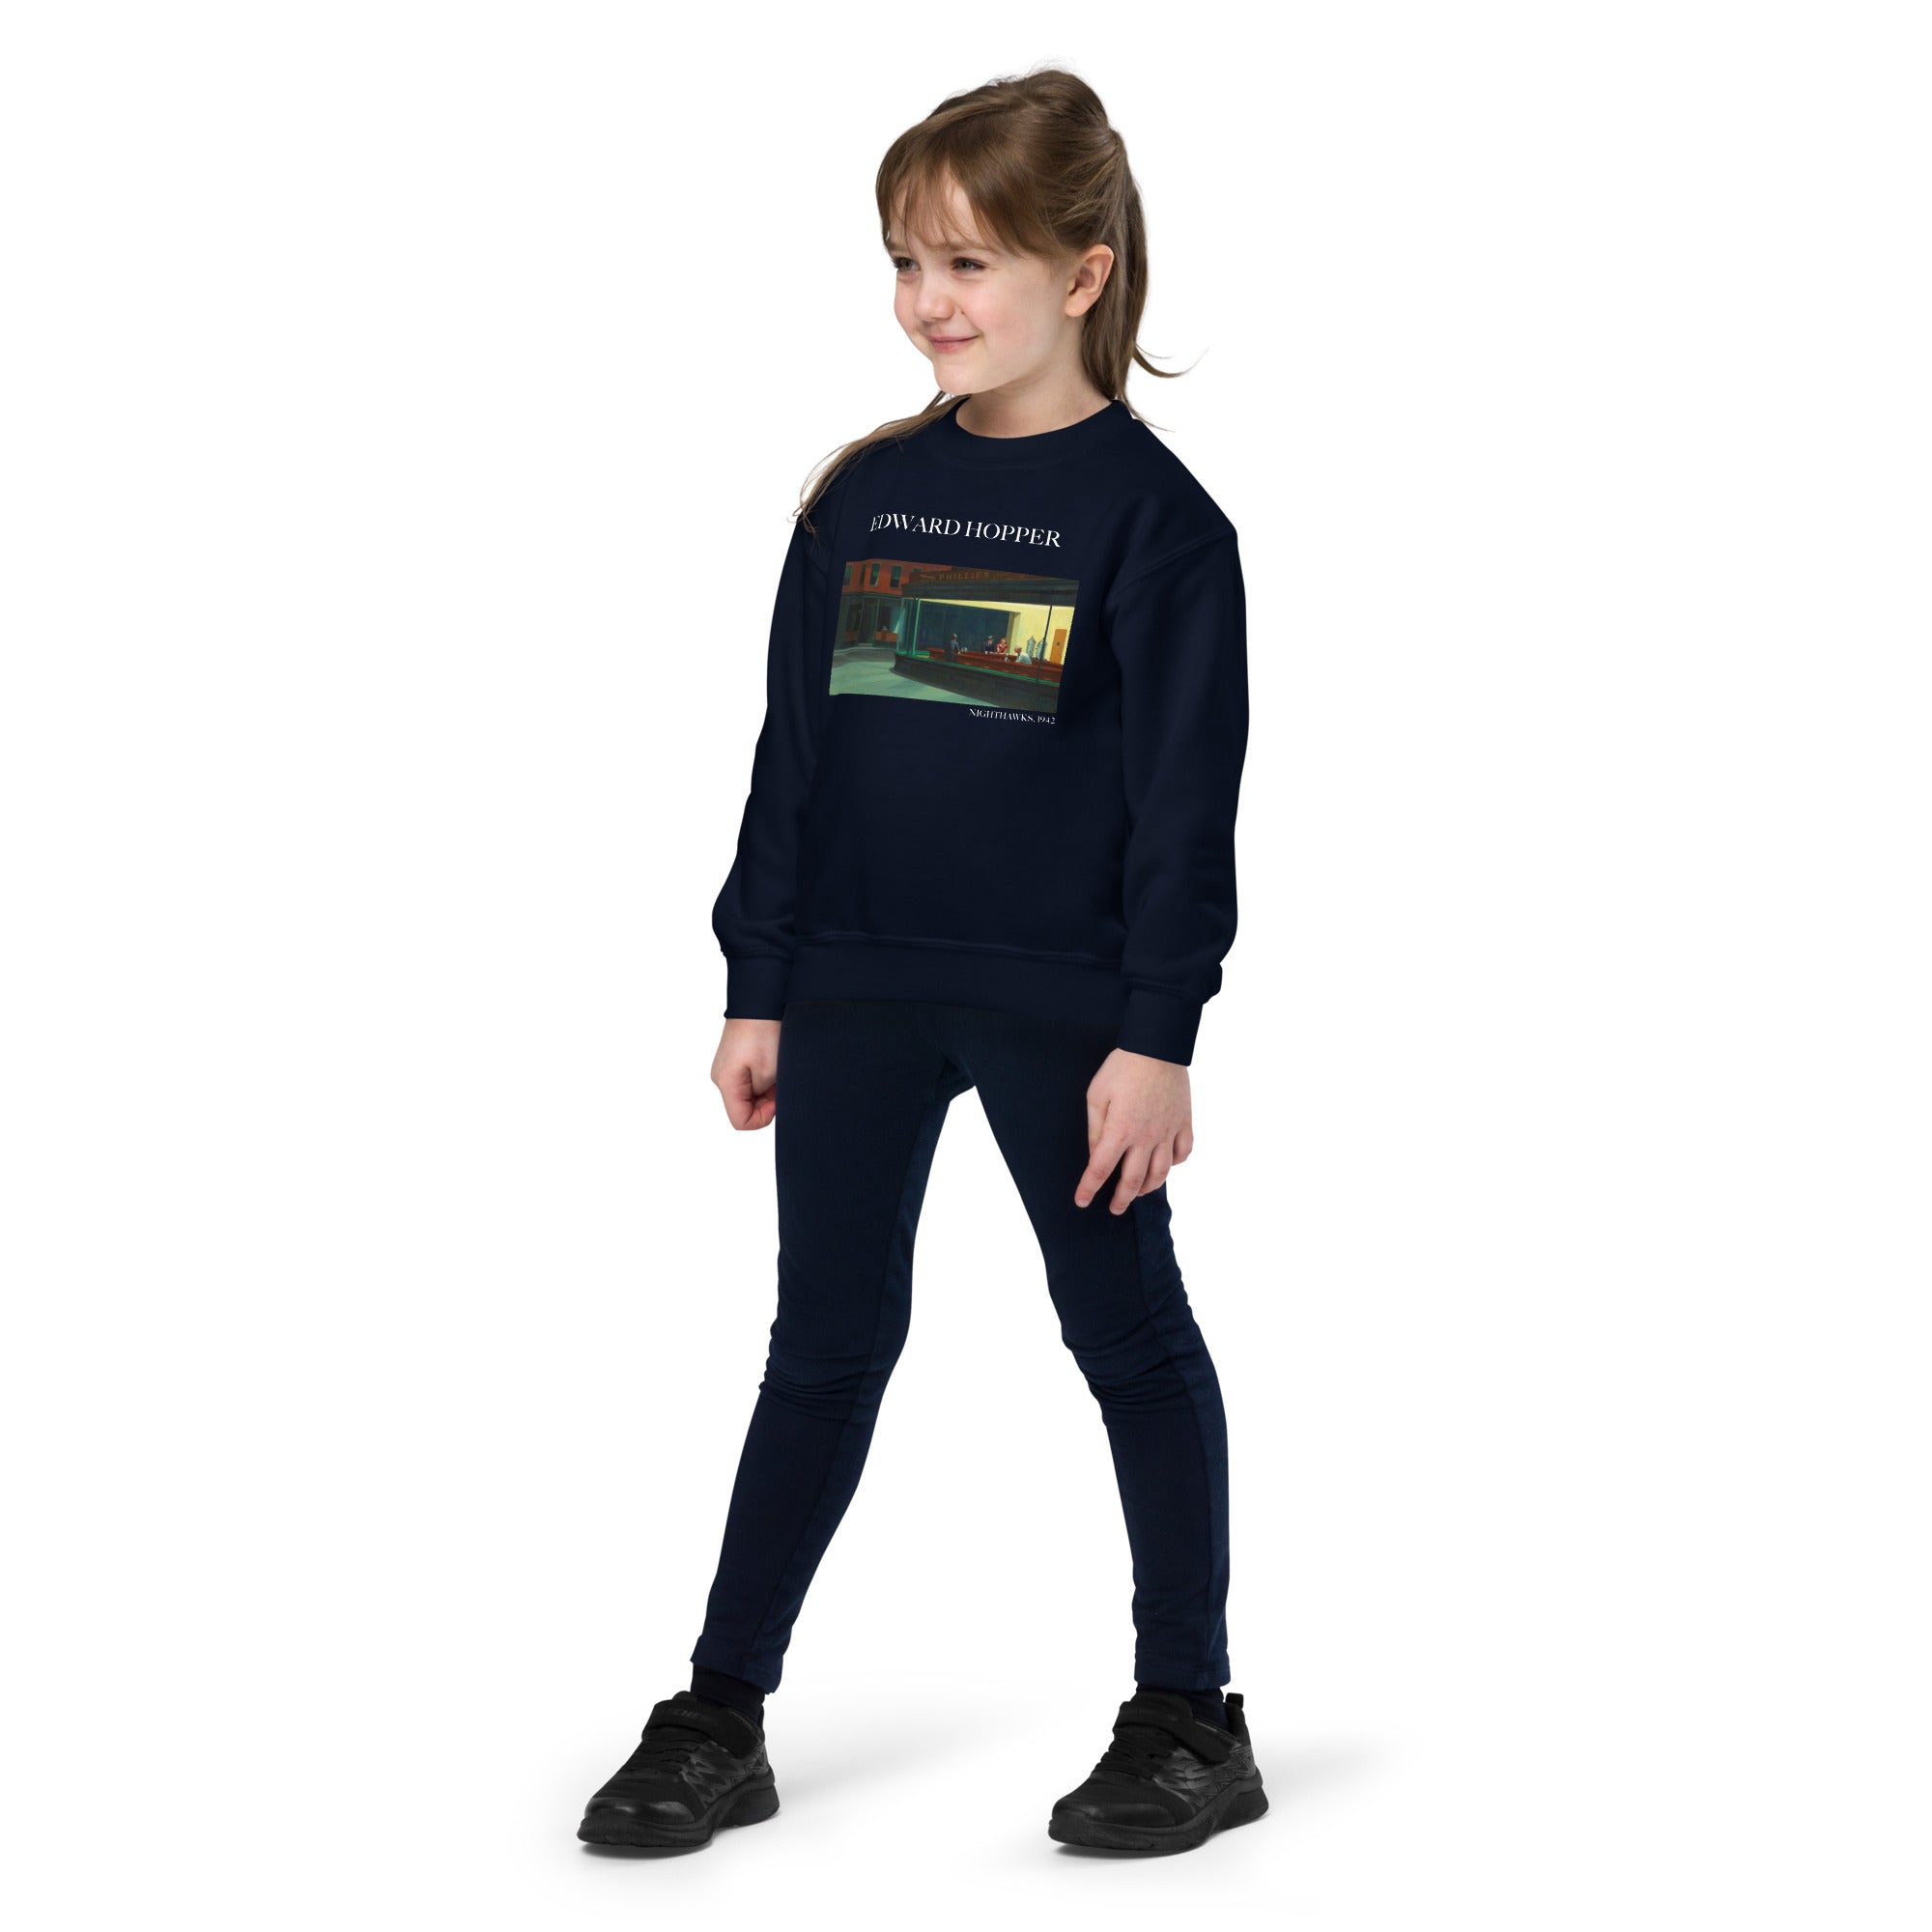 Edward Hopper 'Nighthawks' Famous Painting Crewneck Sweatshirt | Premium Youth Art Sweatshirt